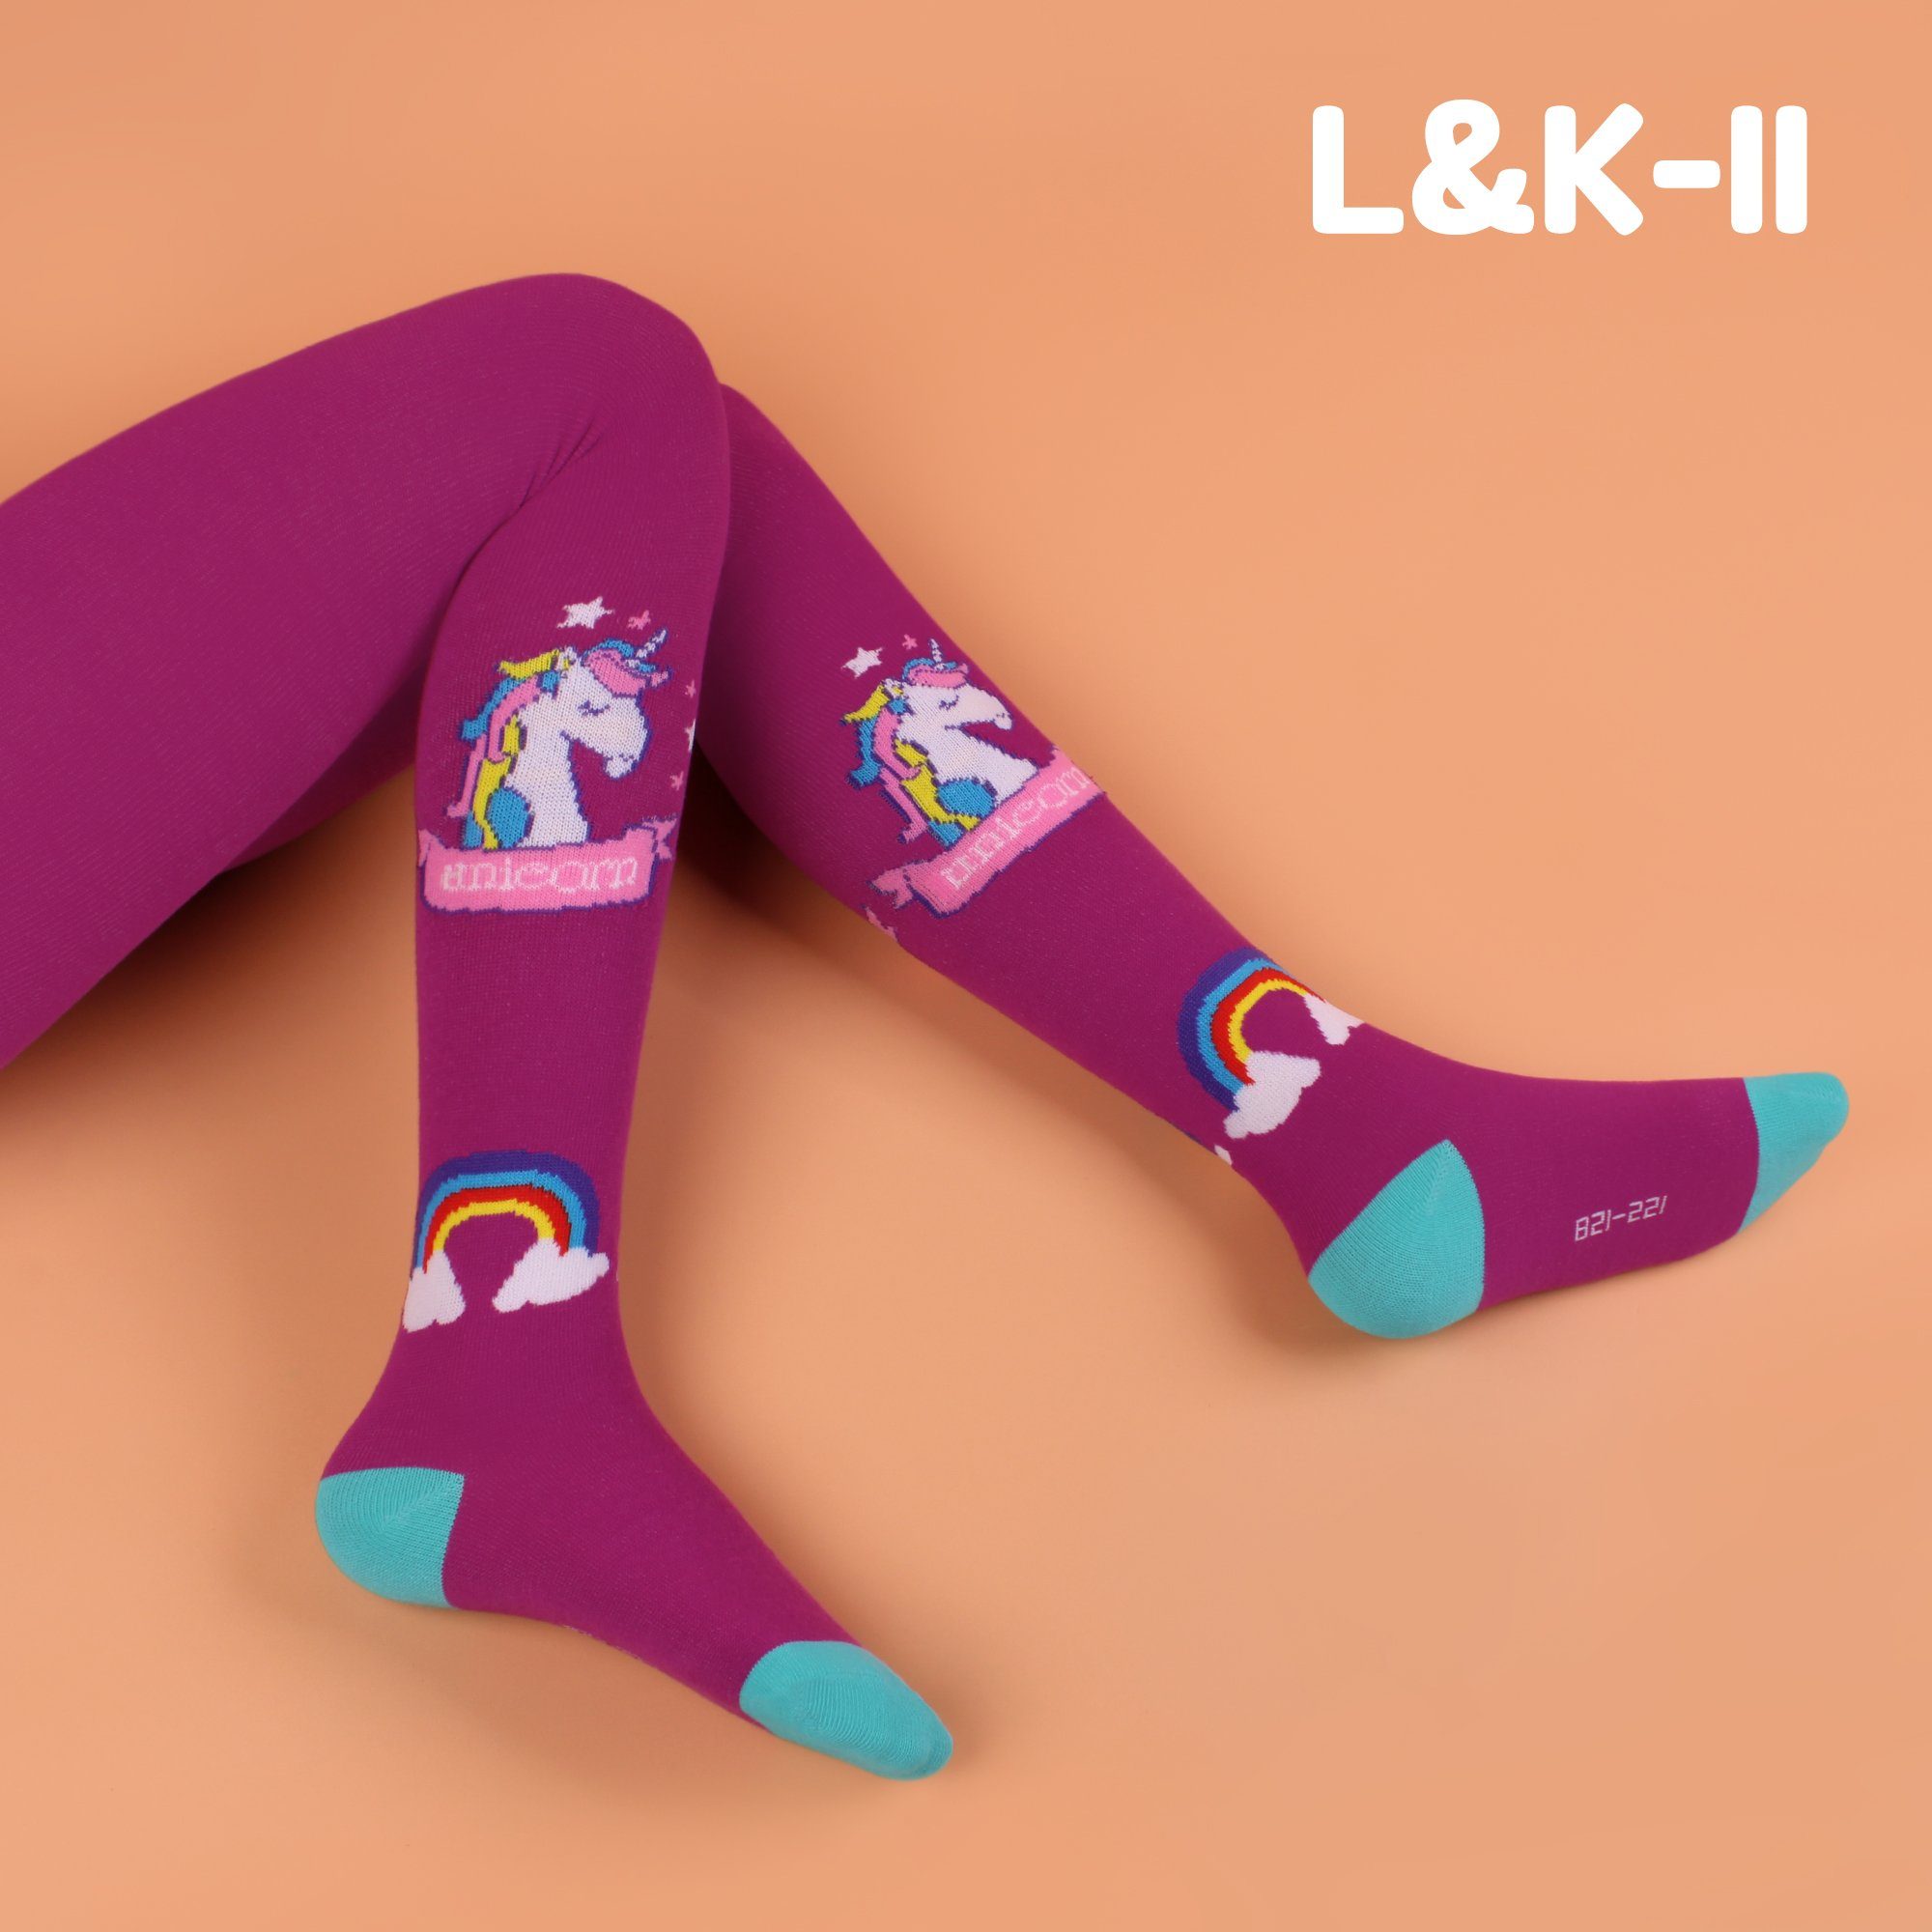 L&K-II Strickstrumpfhose aus Einhorn-Motiven 2730B mit (3er-Packung) 2730 Baumwolle